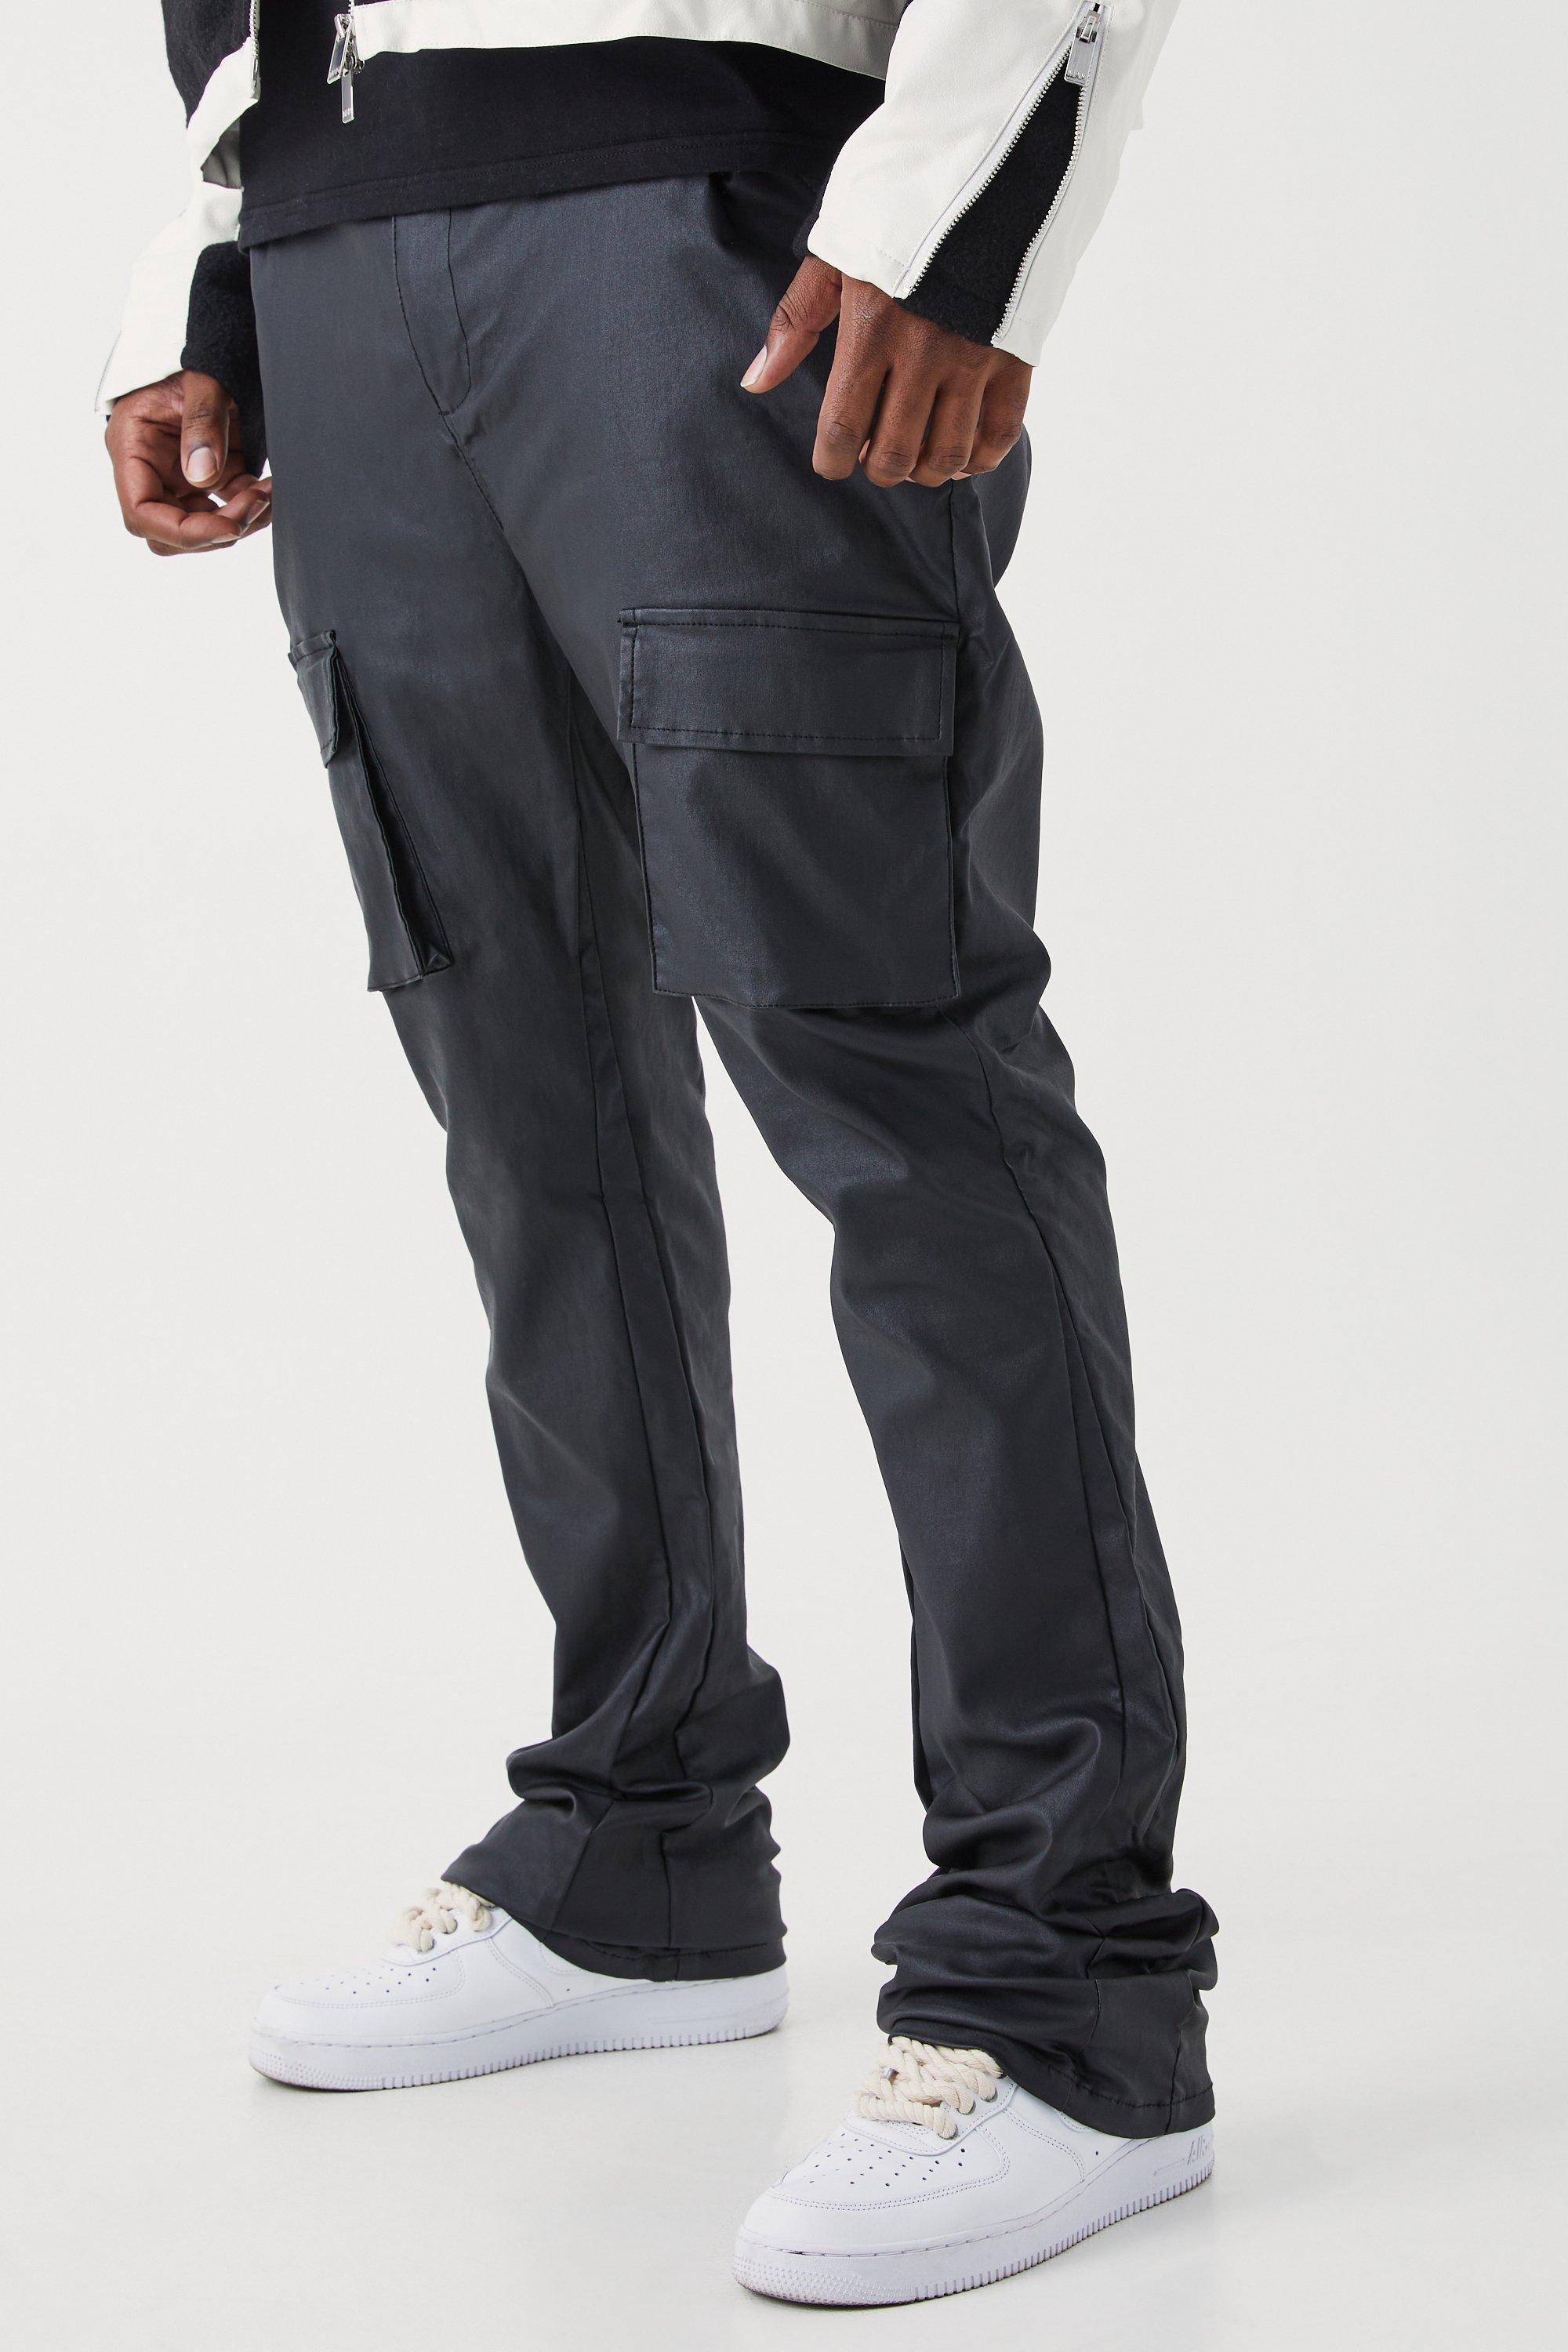 grande taille - pantalon cargo skinny homme - noir - 42, noir